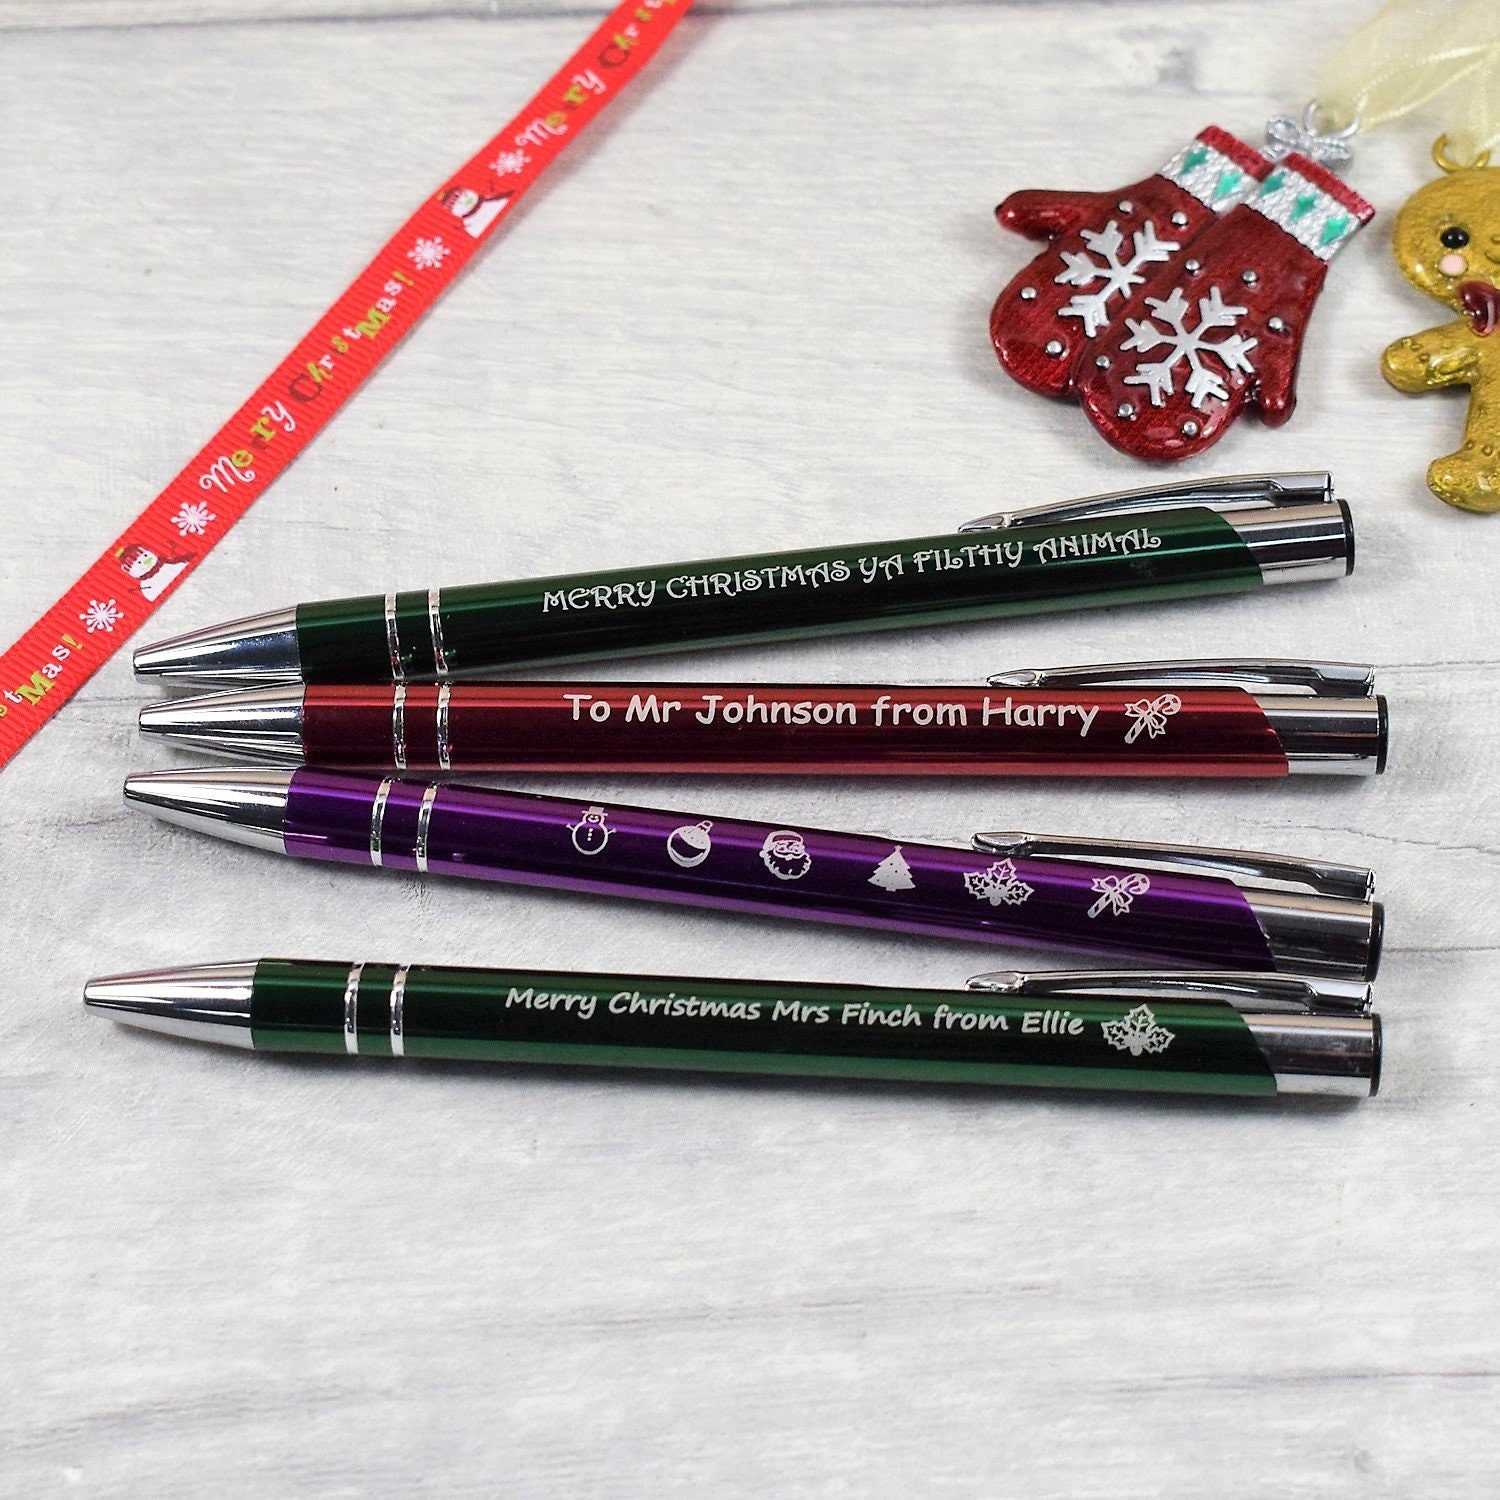 Je teste un stylo graveur pour faire la décoration de vos cadeaux de N